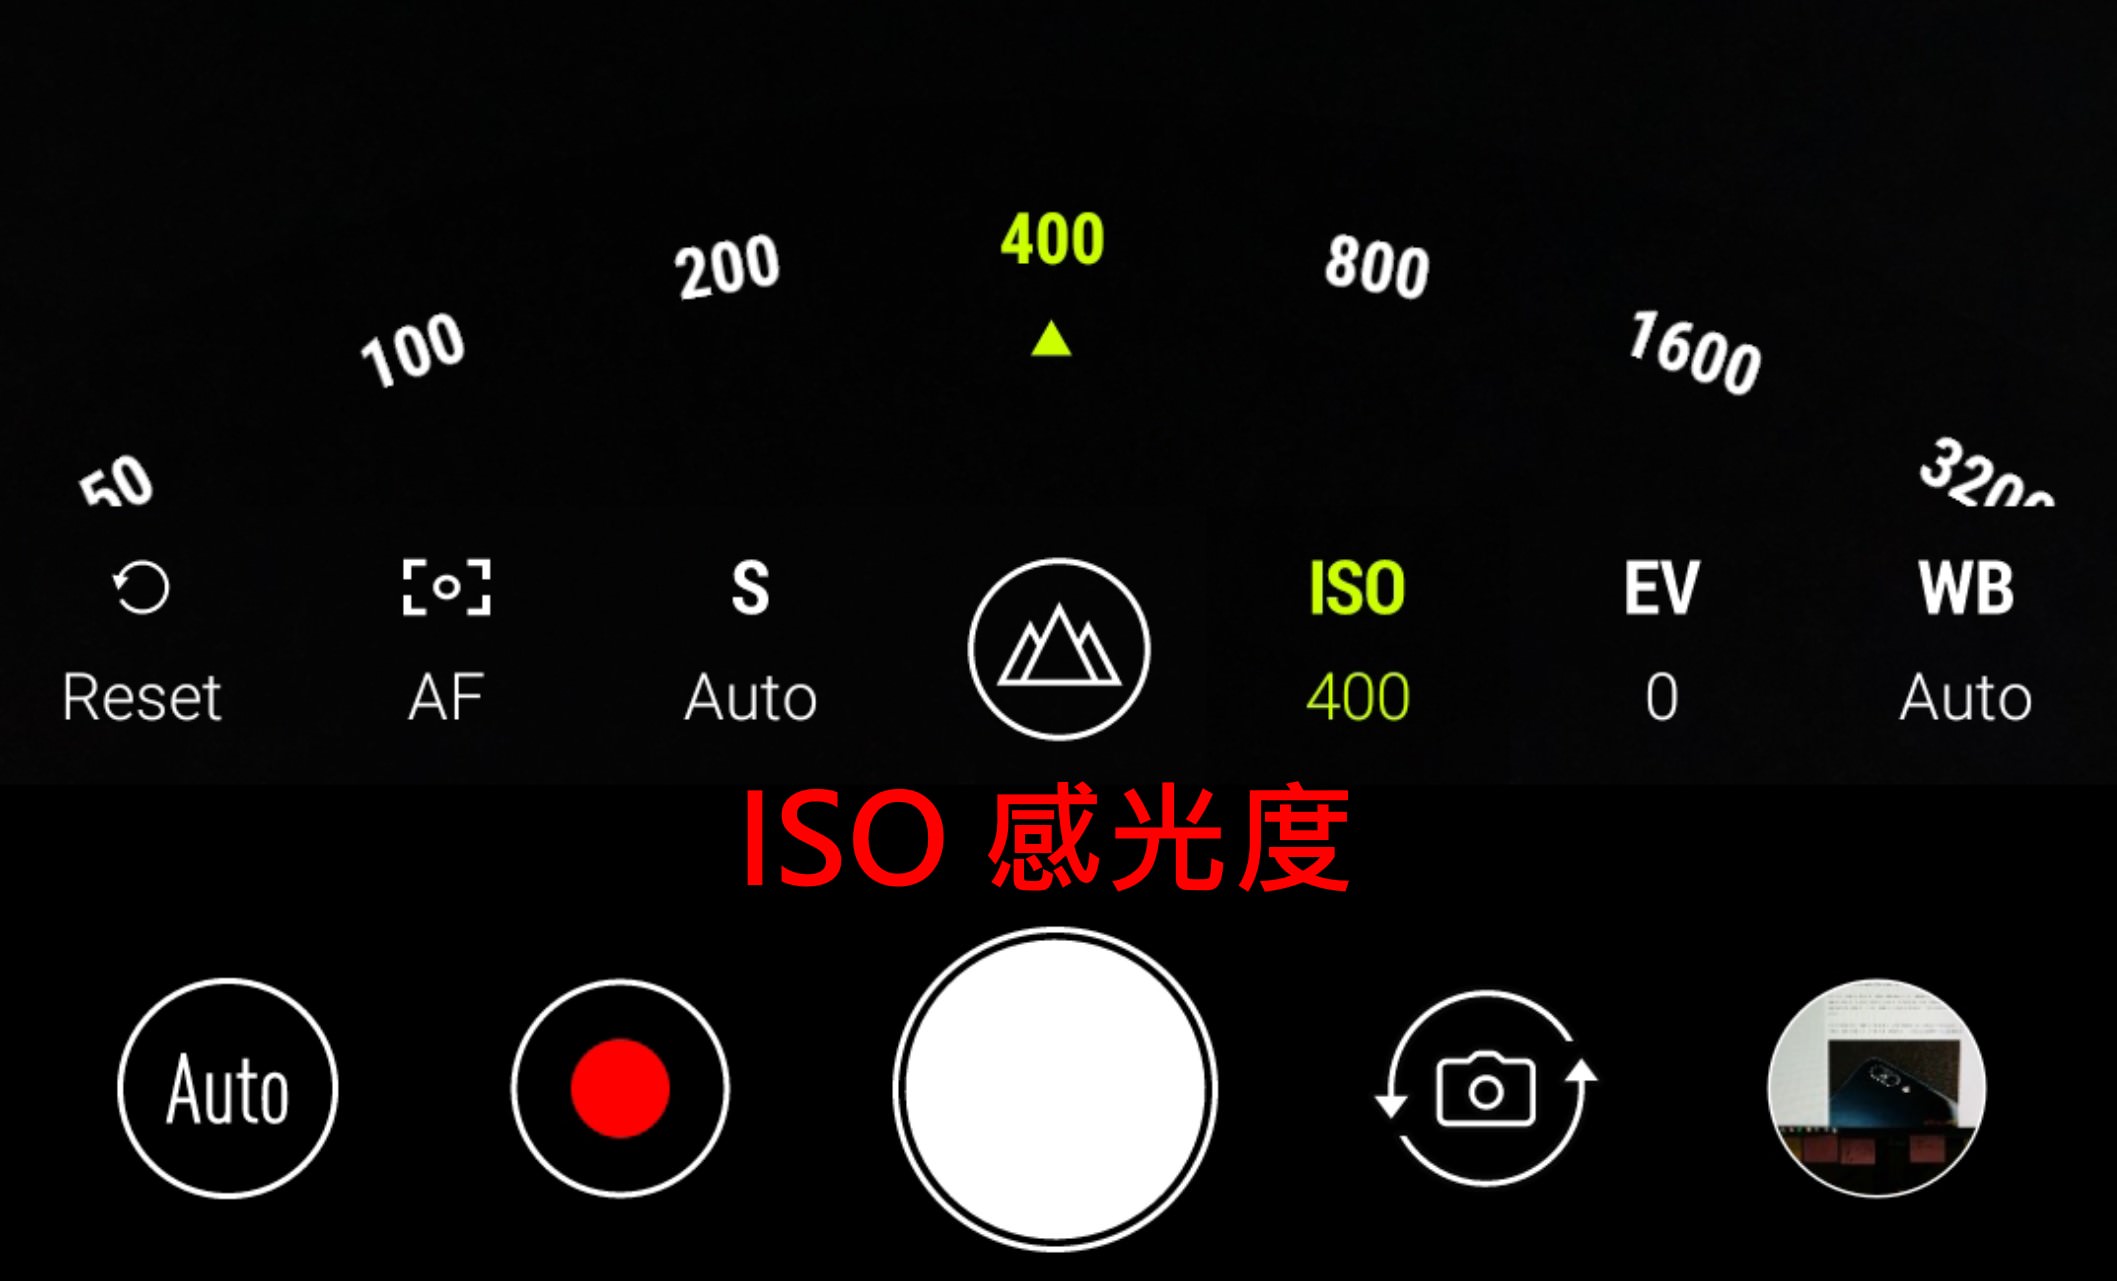 華碩 ZenFone 4 Pro 讓你愛上攝影 , 智慧雙鏡頭光學變焦好厲害